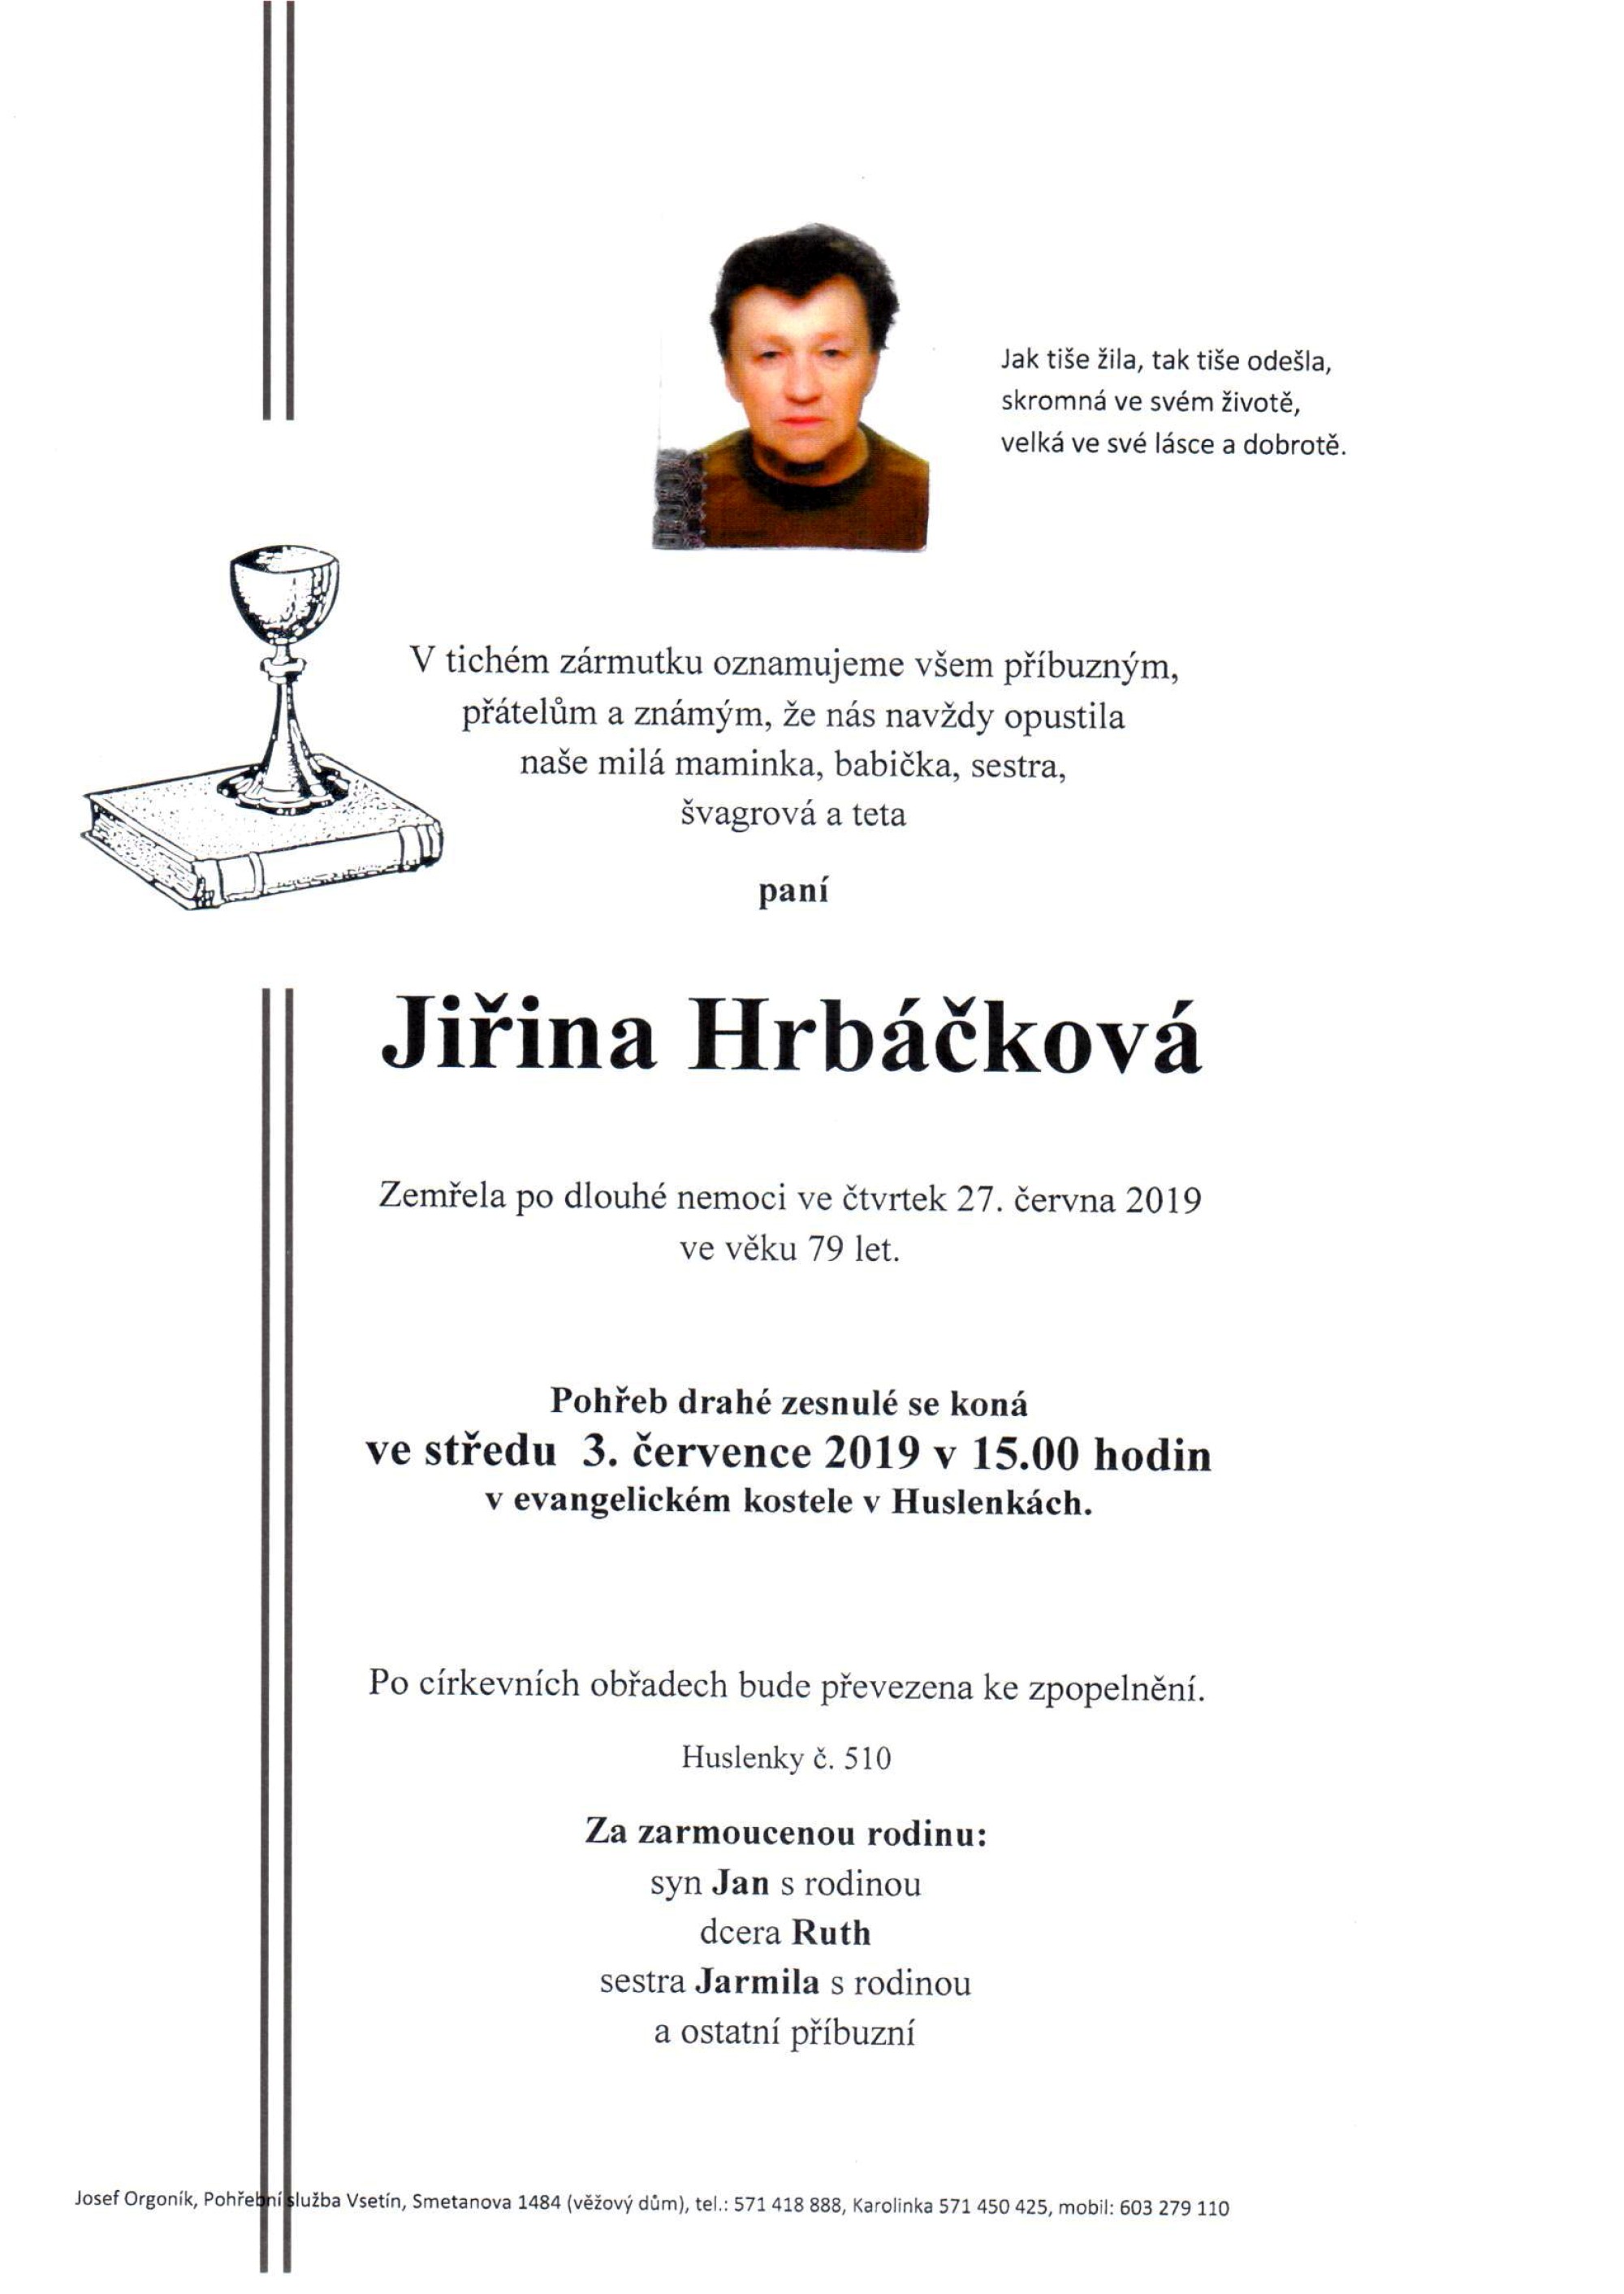 Jiřina Hrbáčková